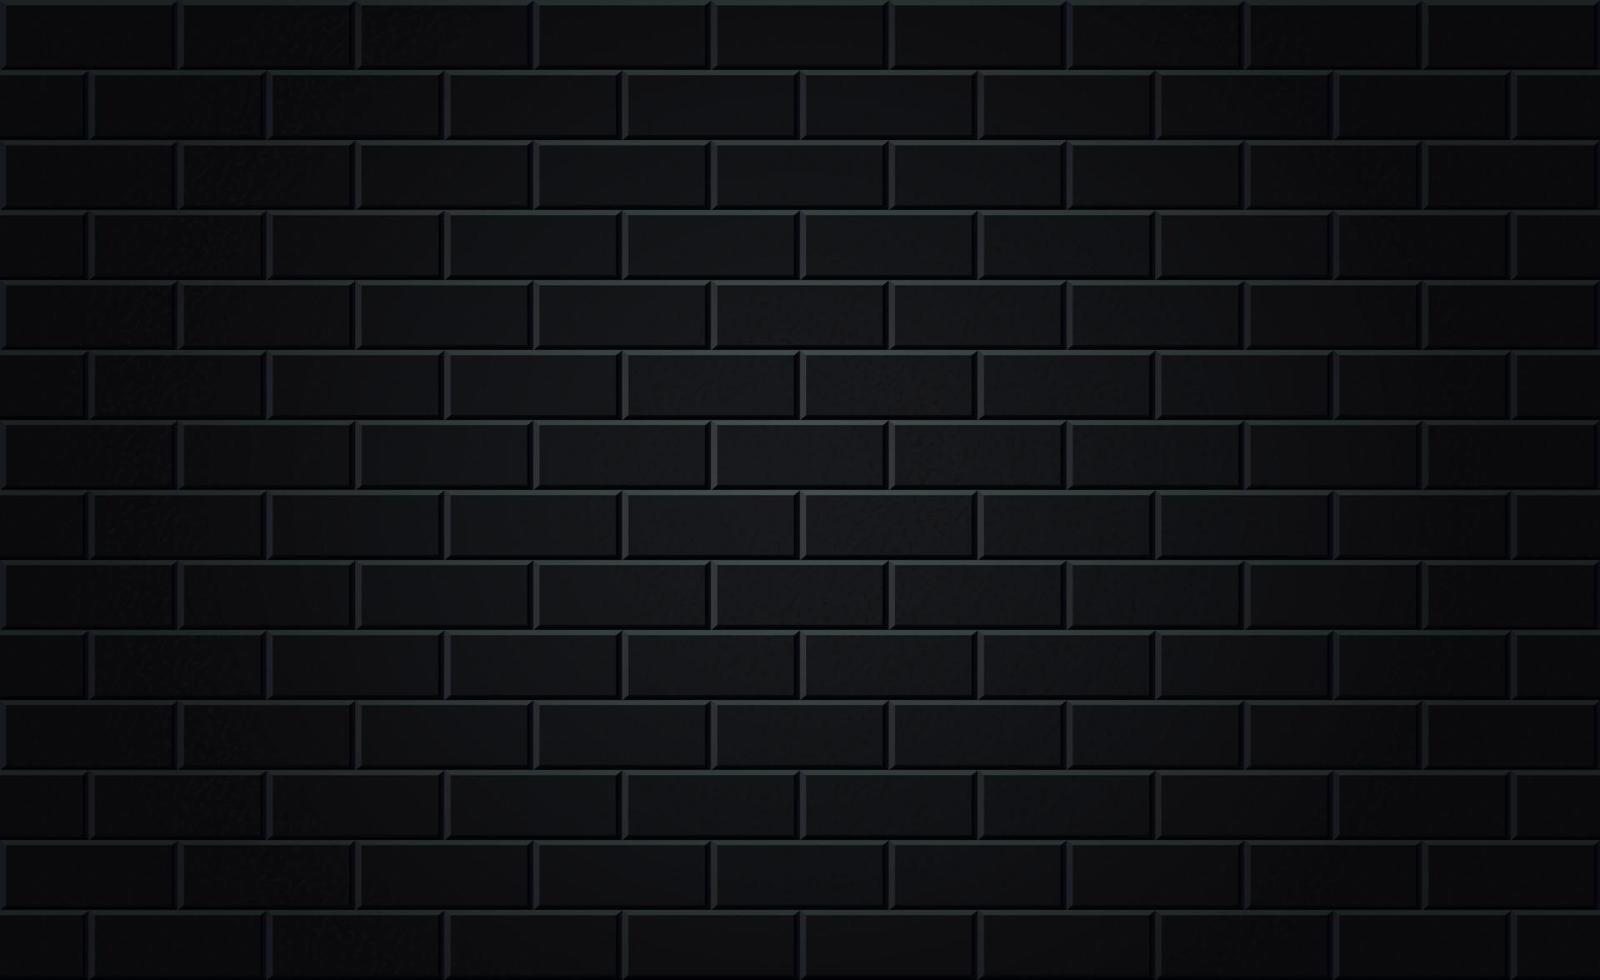 schwarzer Brickwall-Hintergrund für Neonlicht-Poster vektor